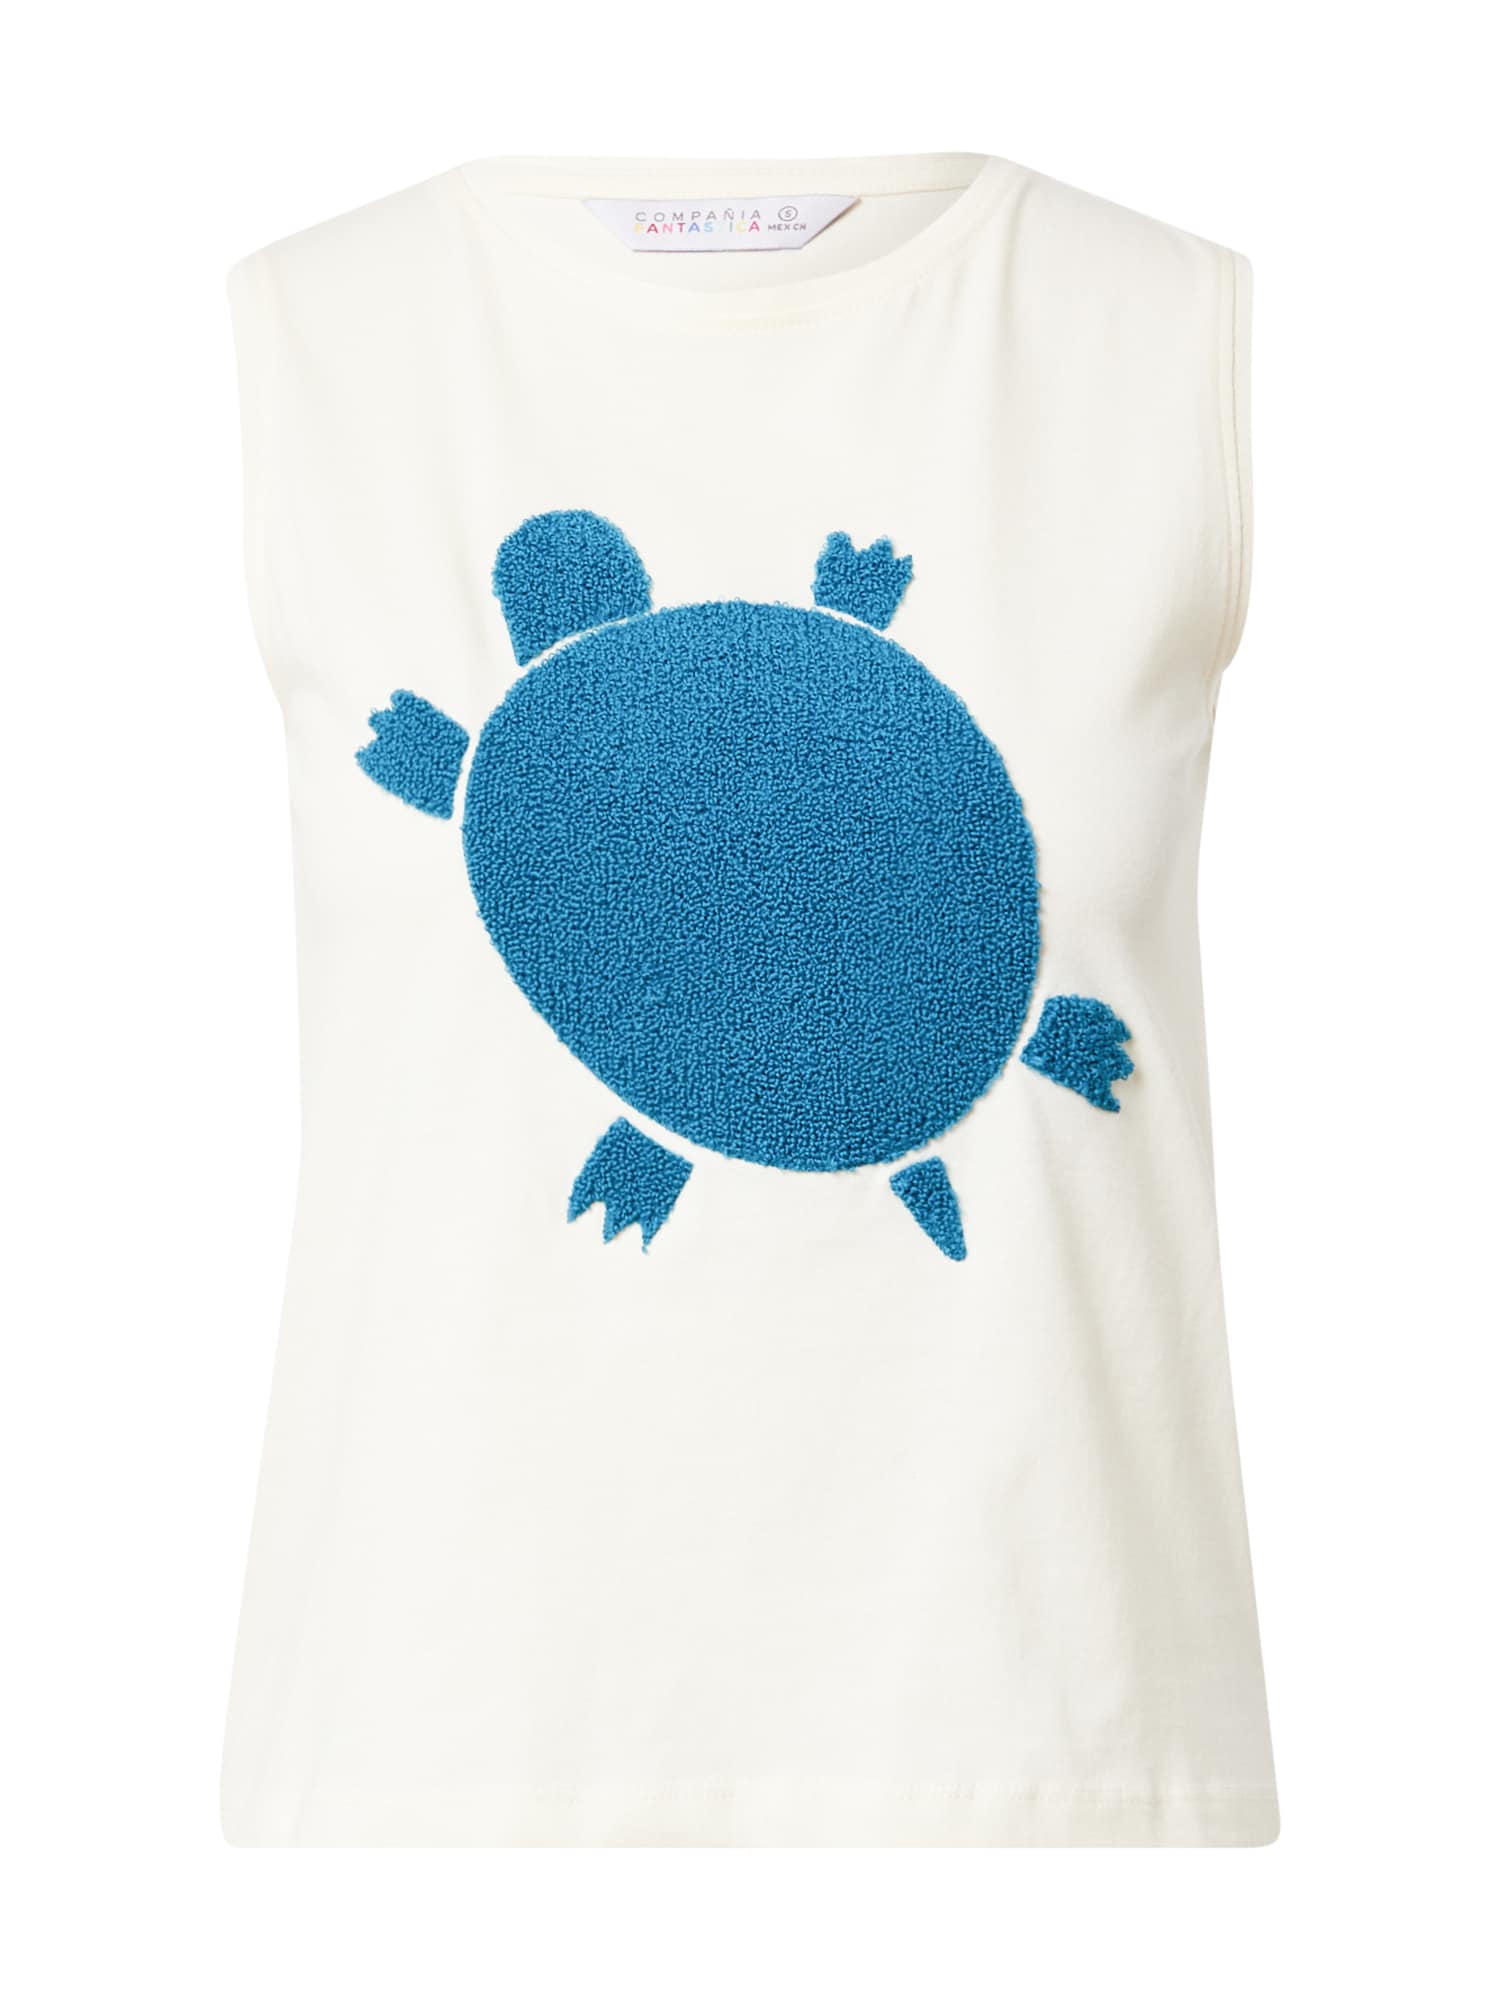 Compania Fantastica Top 'Camiseta'  temno modra / bela